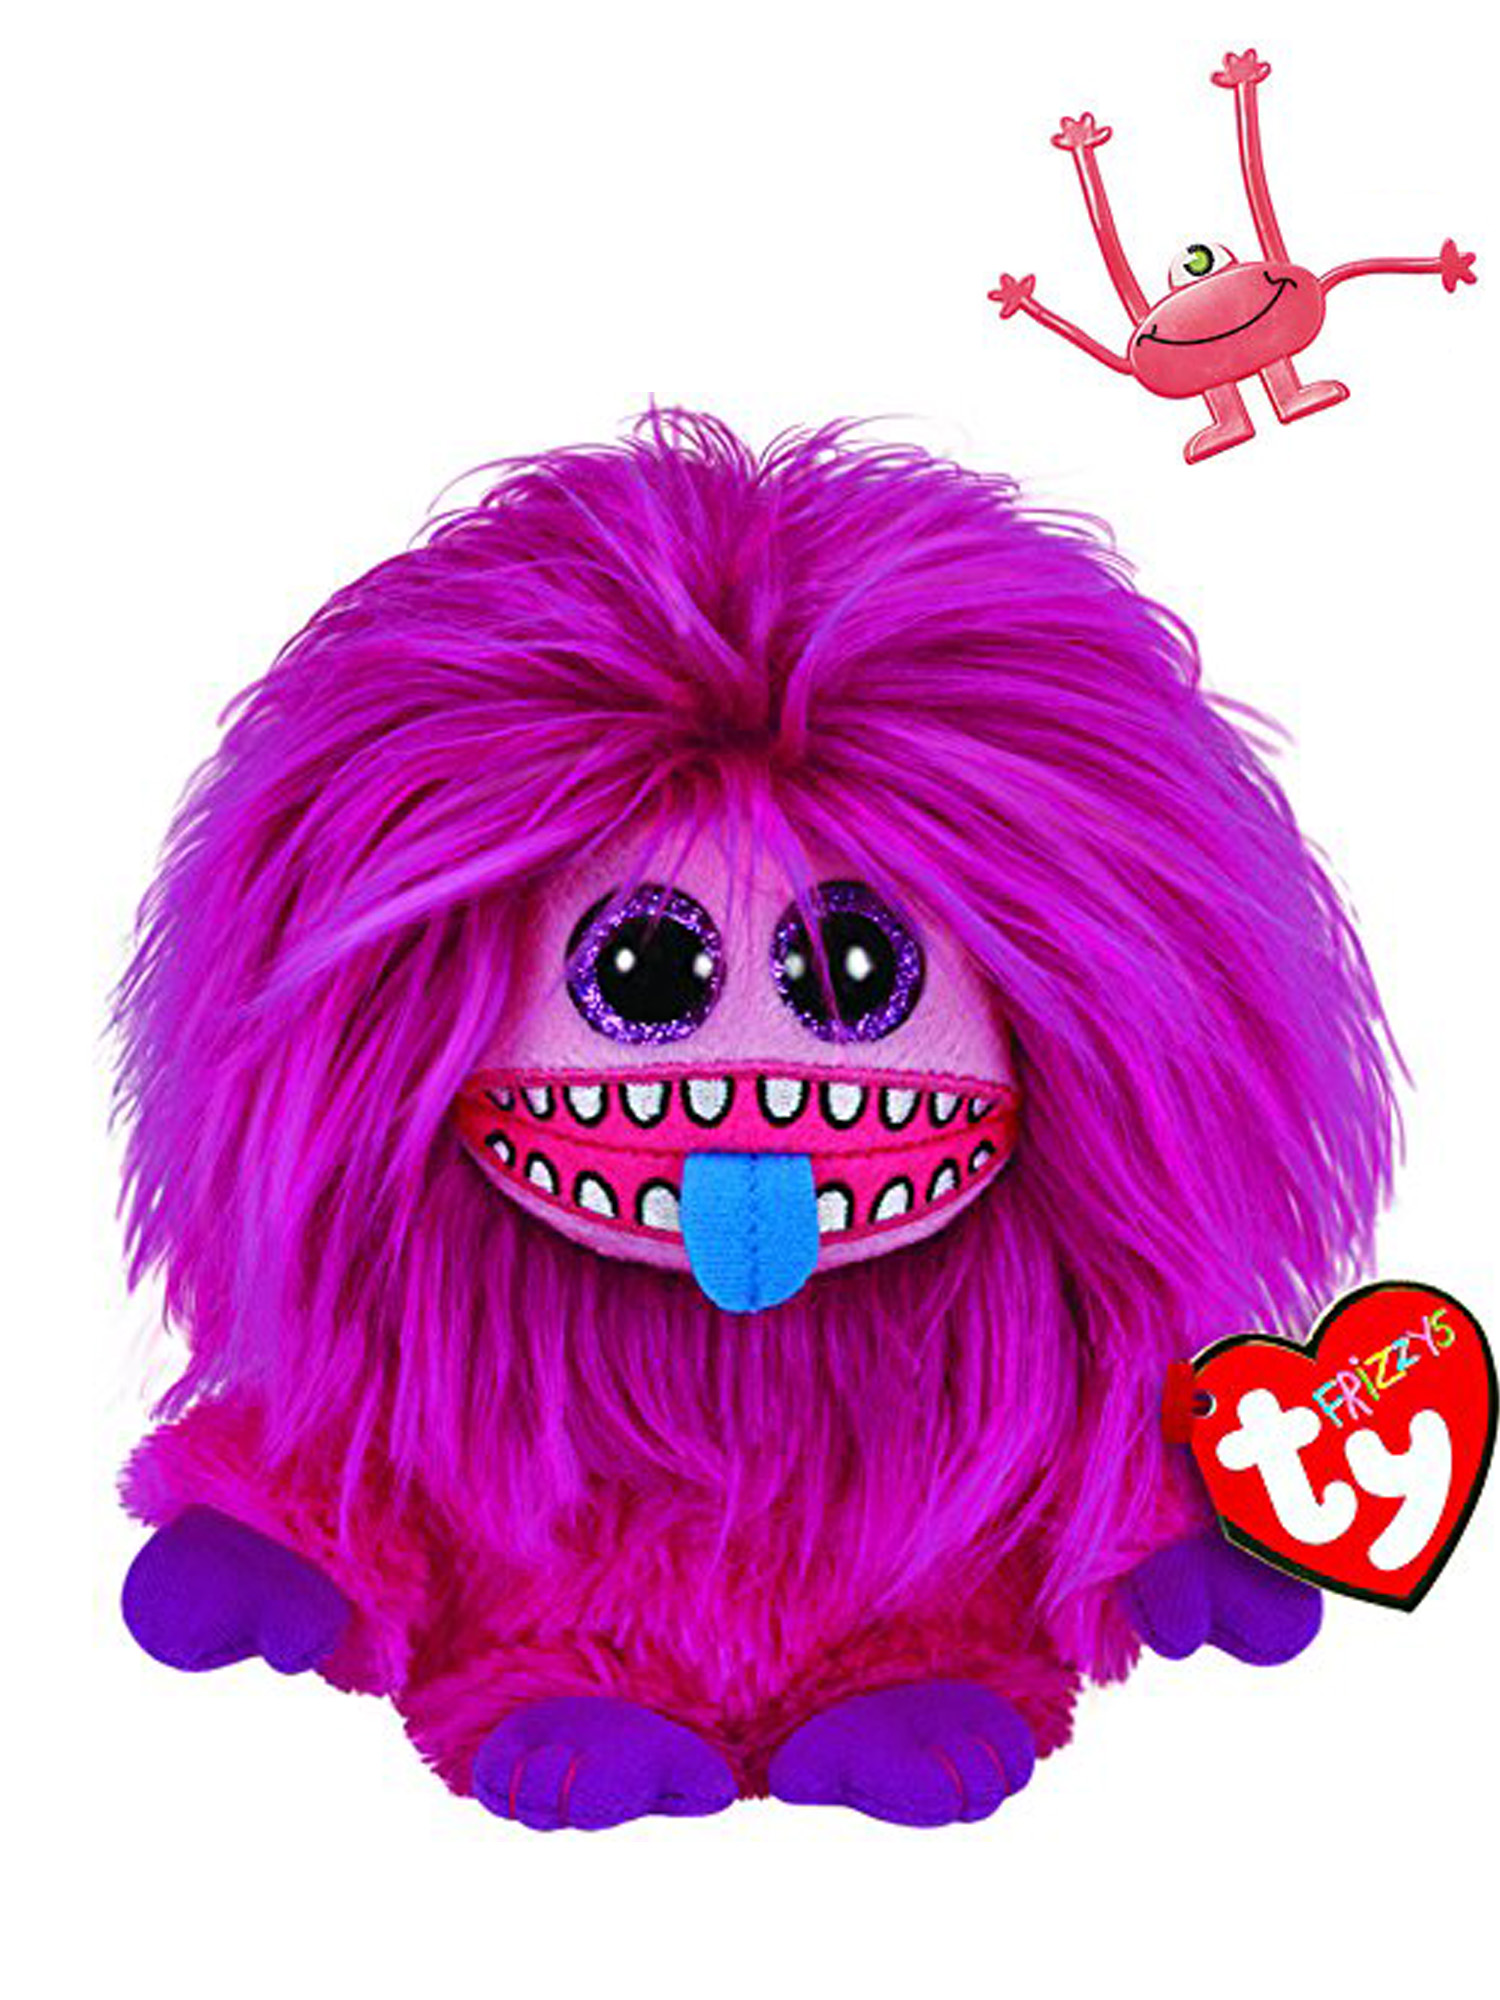 Frizzys ZeeZee Plush Toy & Bendable Monster Character Bundle Set - image 1 of 2